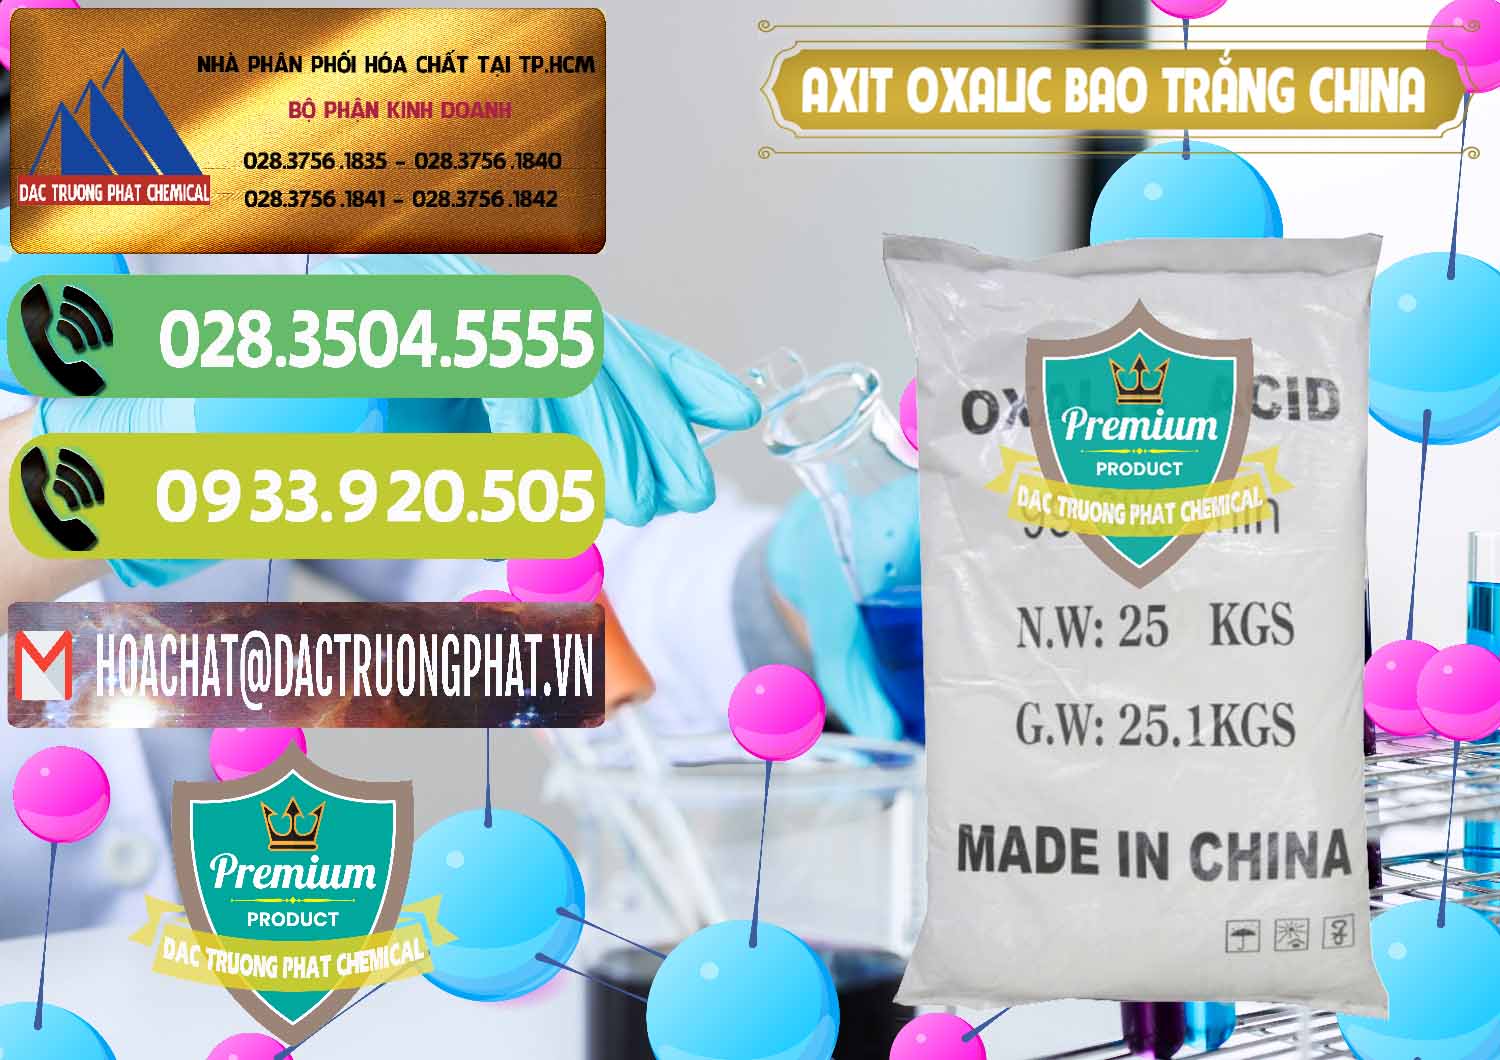 Nơi chuyên nhập khẩu & bán Acid Oxalic – Axit Oxalic 99.6% Bao Trắng Trung Quốc China - 0270 - Cung cấp ( kinh doanh ) hóa chất tại TP.HCM - hoachatmientay.vn